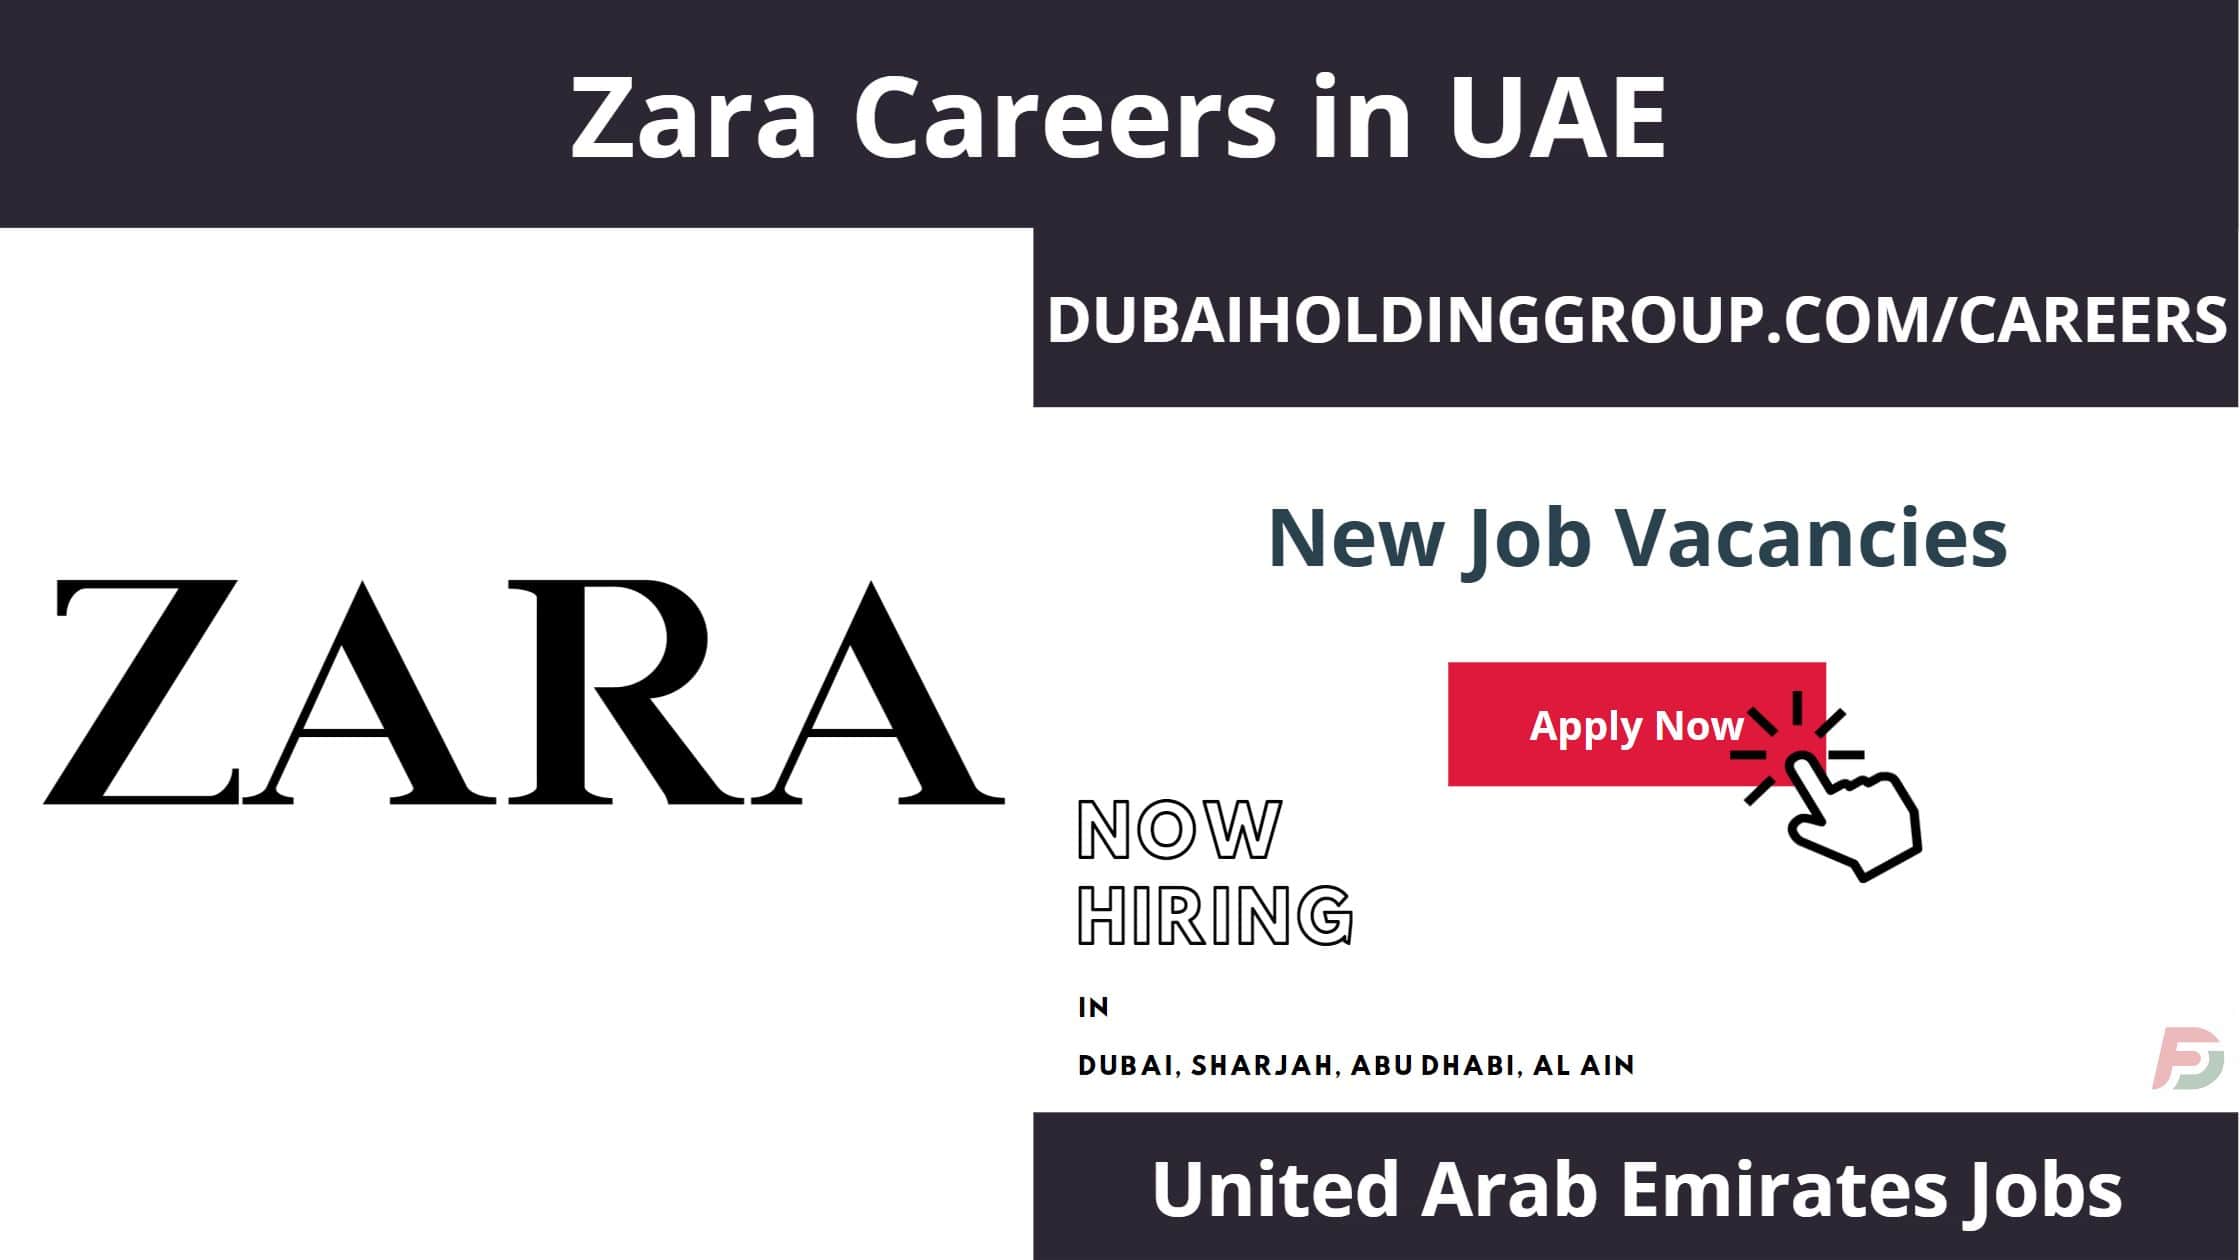 Zara Careers in UAE